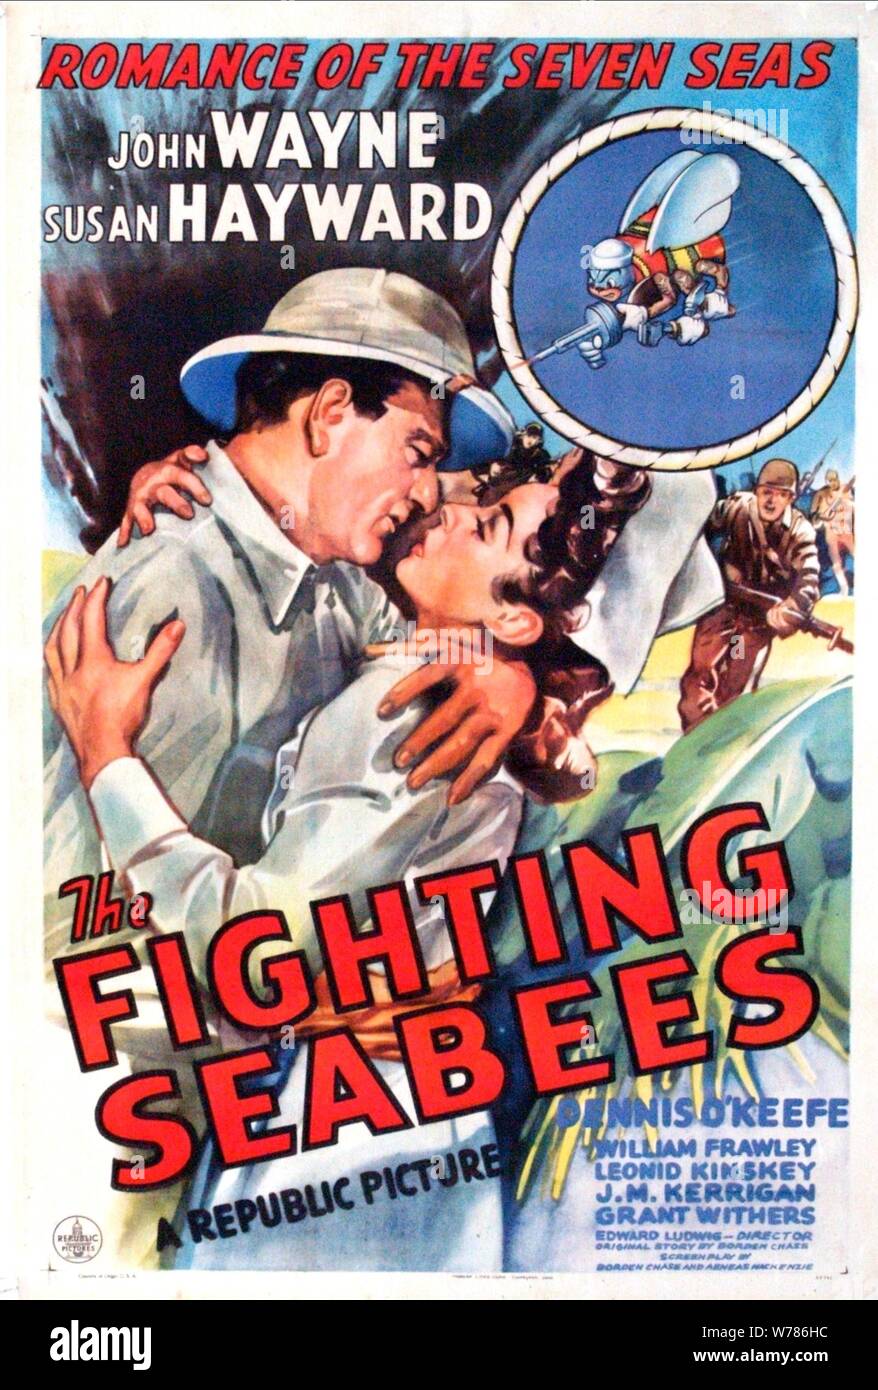 JOHN WAYNE, Susan Hayward, AFFICHE LES COMBATS SEABEES, 1944 Banque D'Images